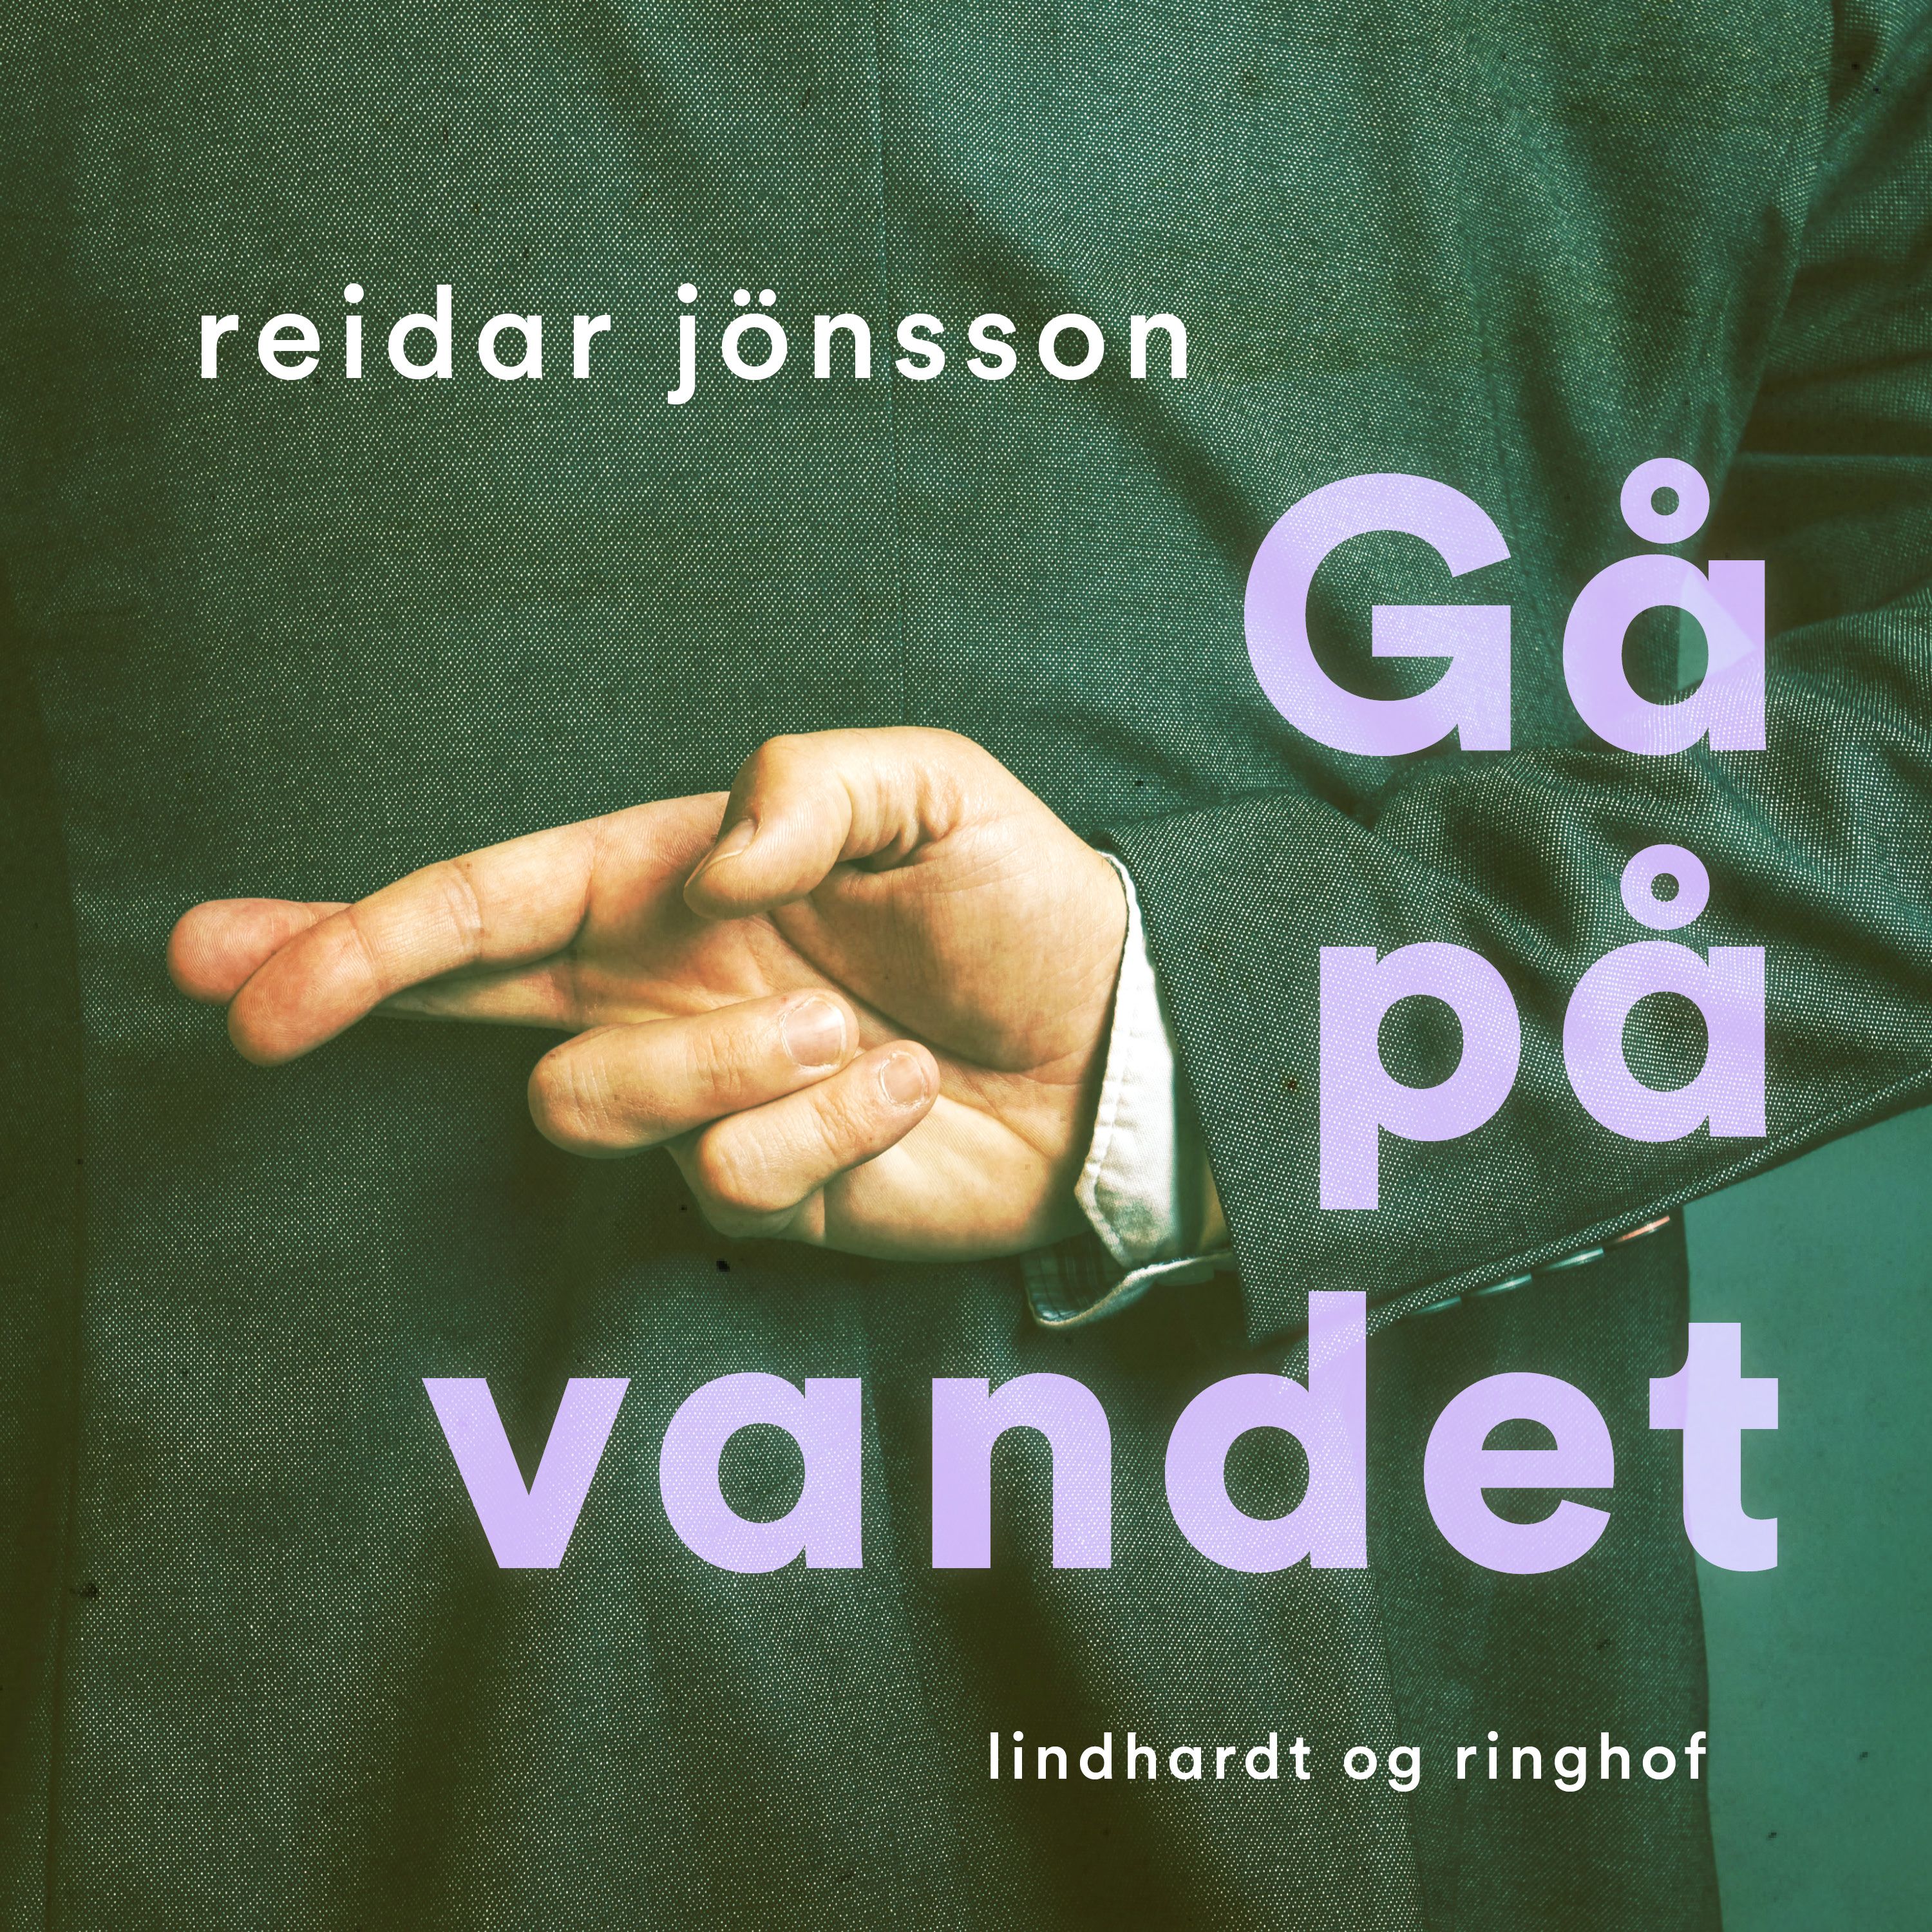 Gå på vandet, ljudbok av Reidar Jönsson